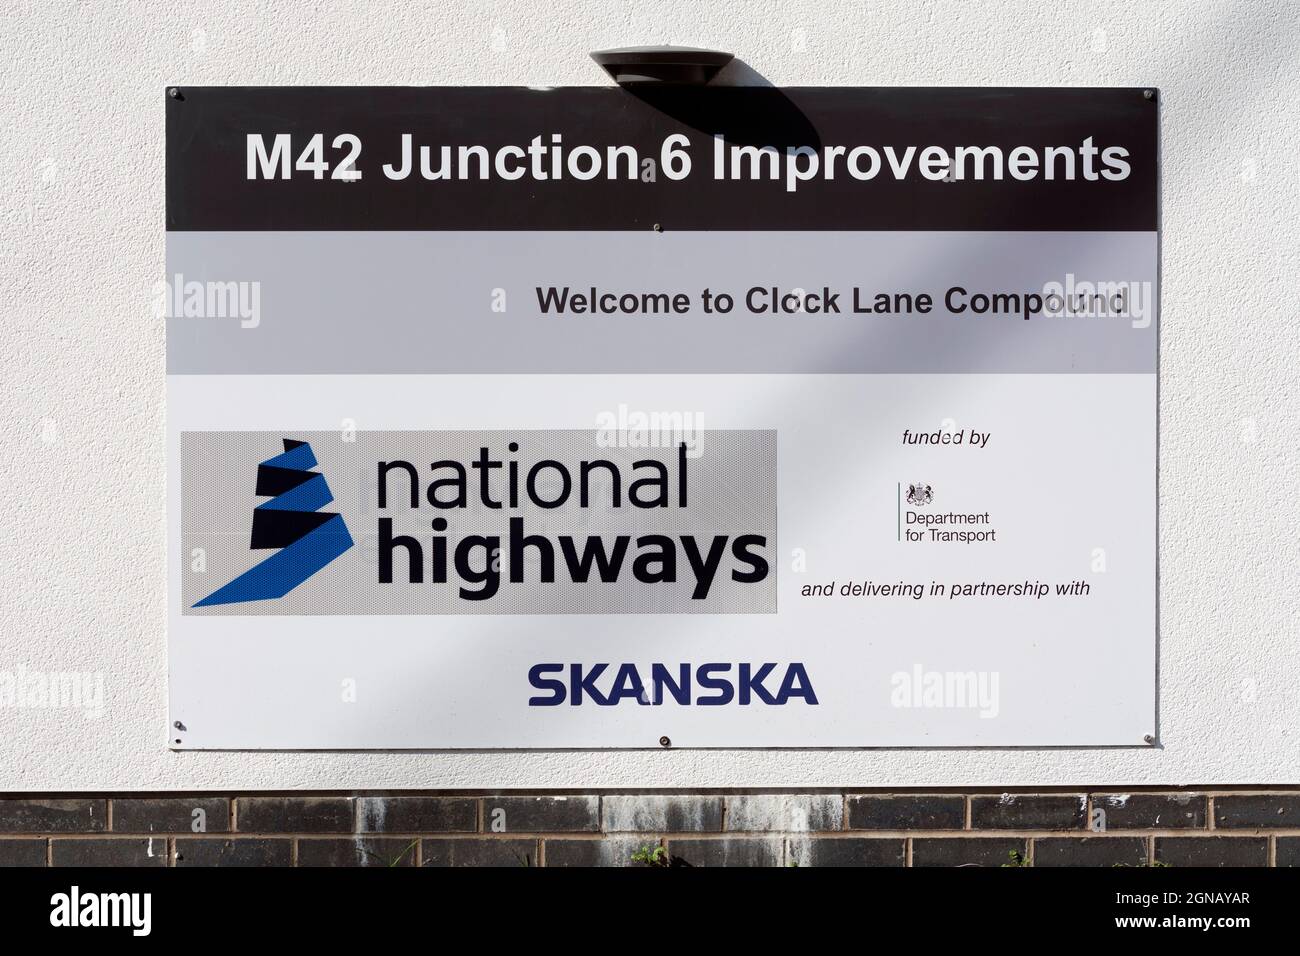 M42 panneau d'amélioration de la jonction 6, Birmingham, Royaume-Uni Banque D'Images